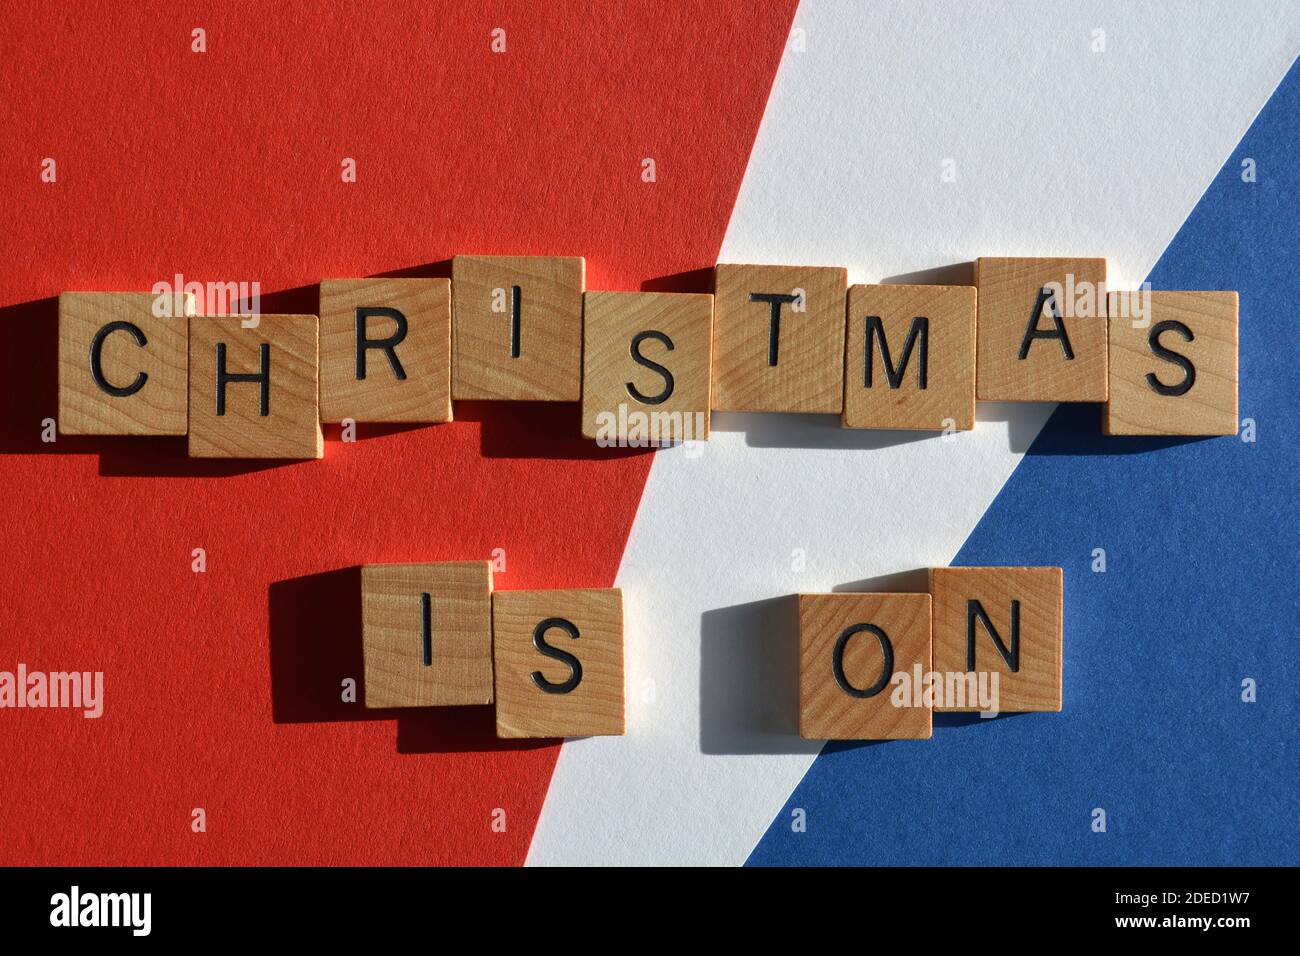 Natale è in corso, parole in lettere alfabetiche in legno isolato su sfondo rosso, bianco e blu Foto Stock